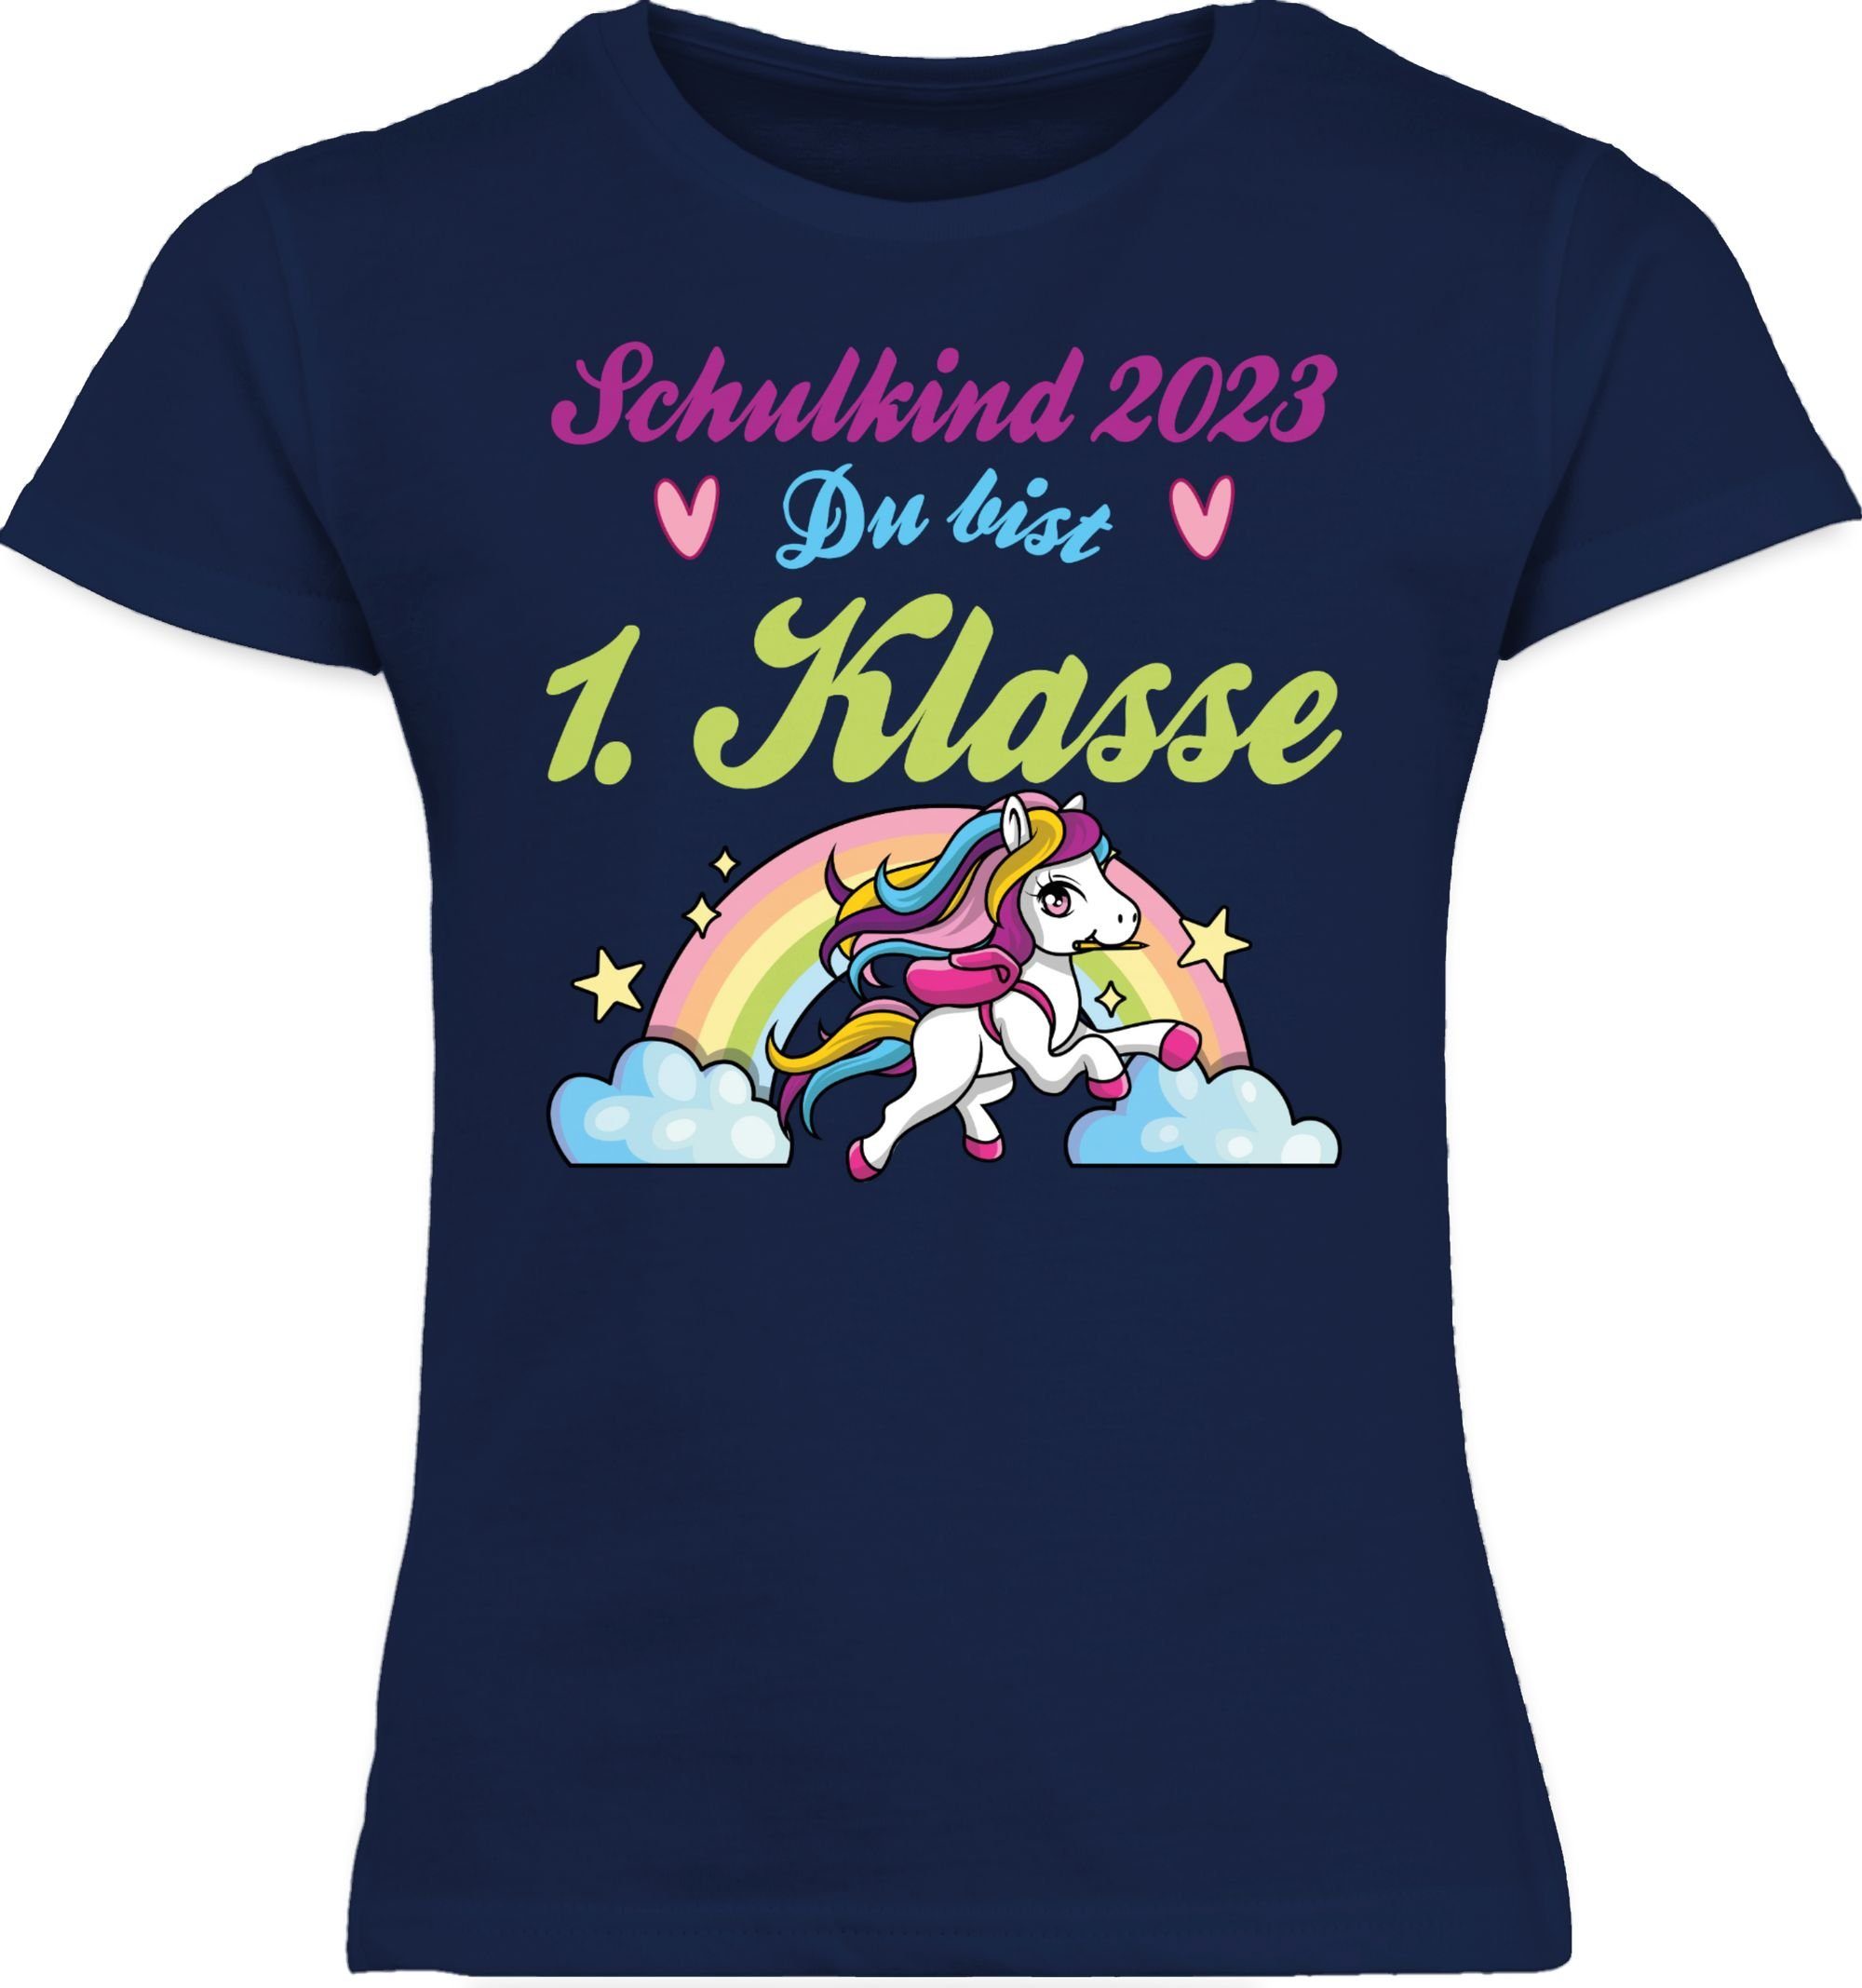 Shirtracer T-Shirt Klasse Regenbogen bist 1. 2 - Einschulung und Pferd Navy Schulkind 2023 Blau Mädchen du